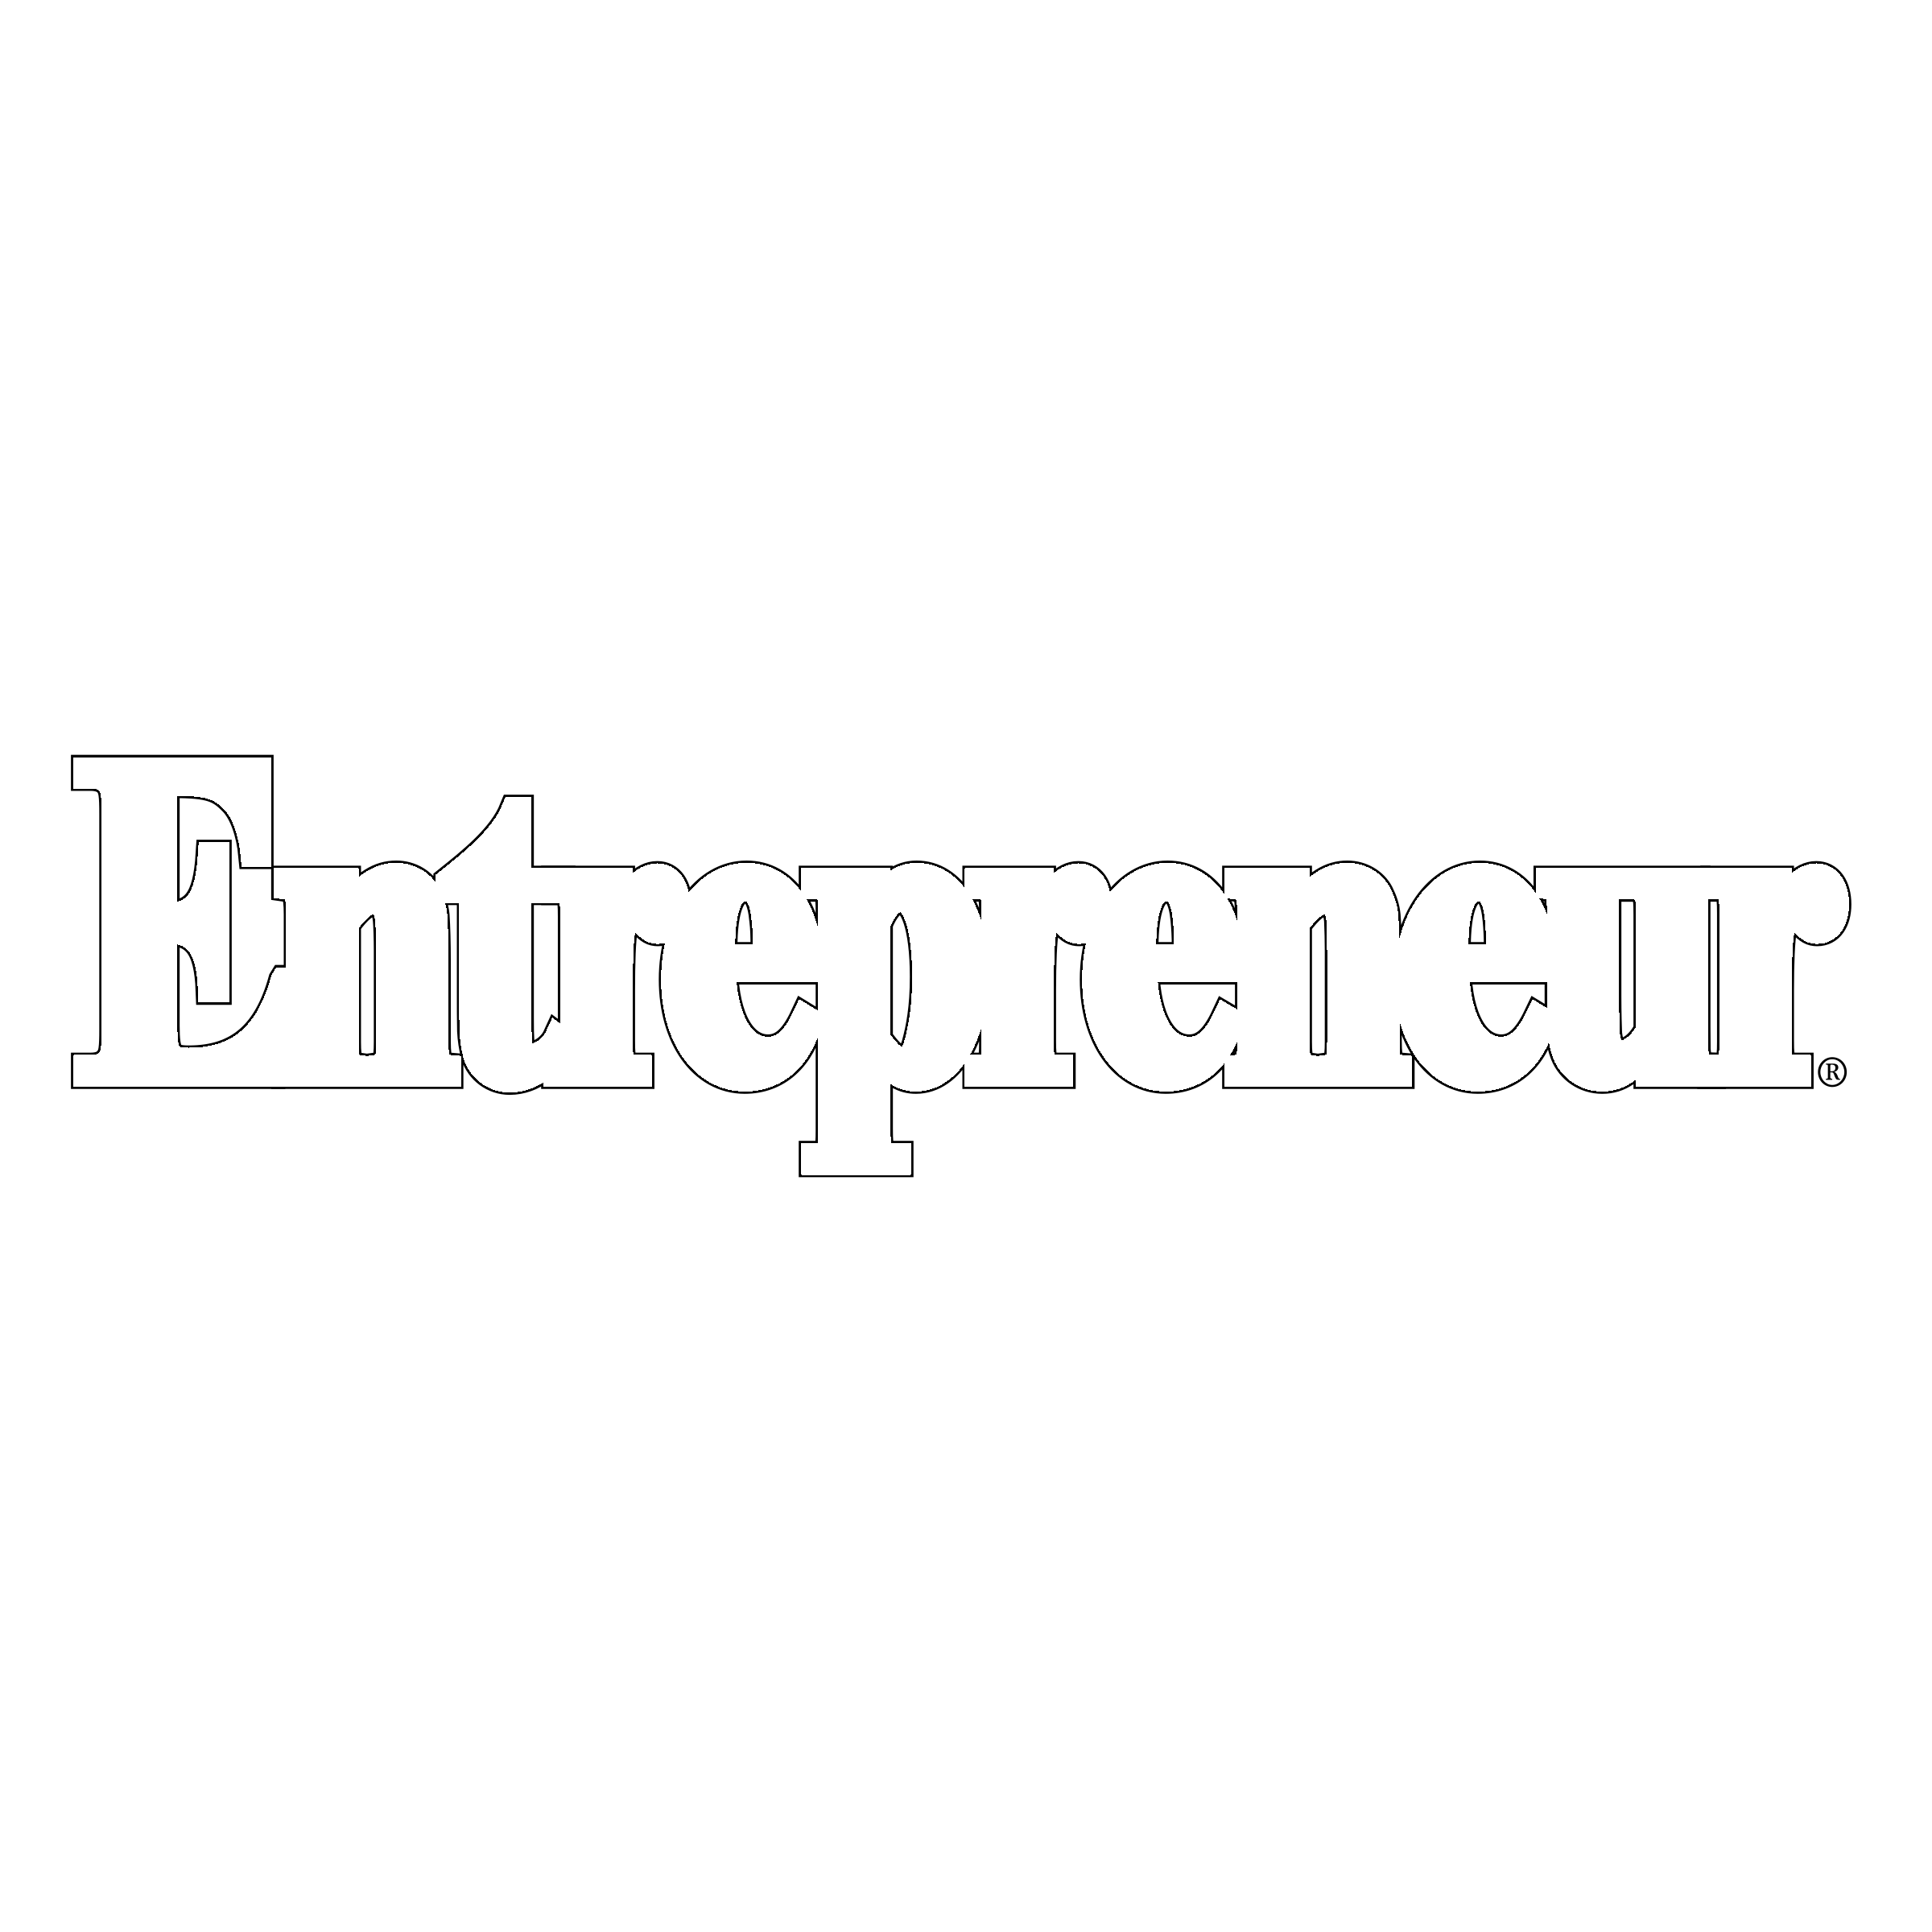 entrepreneur logo black and white